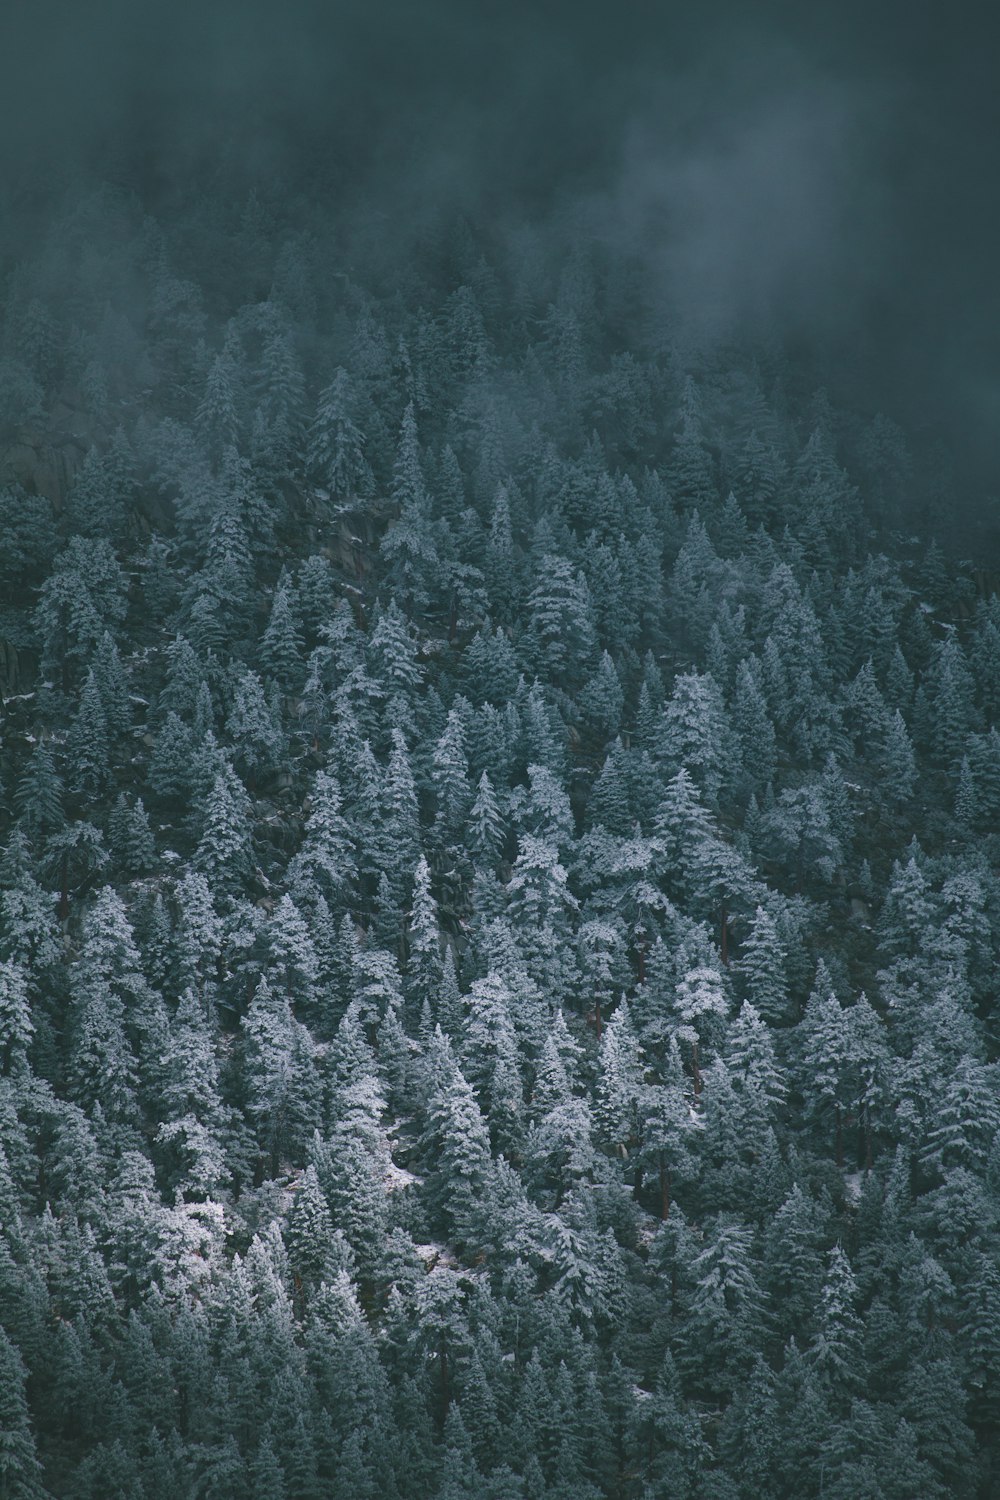 visão panorâmica de árvores cobertas por nevoeiros